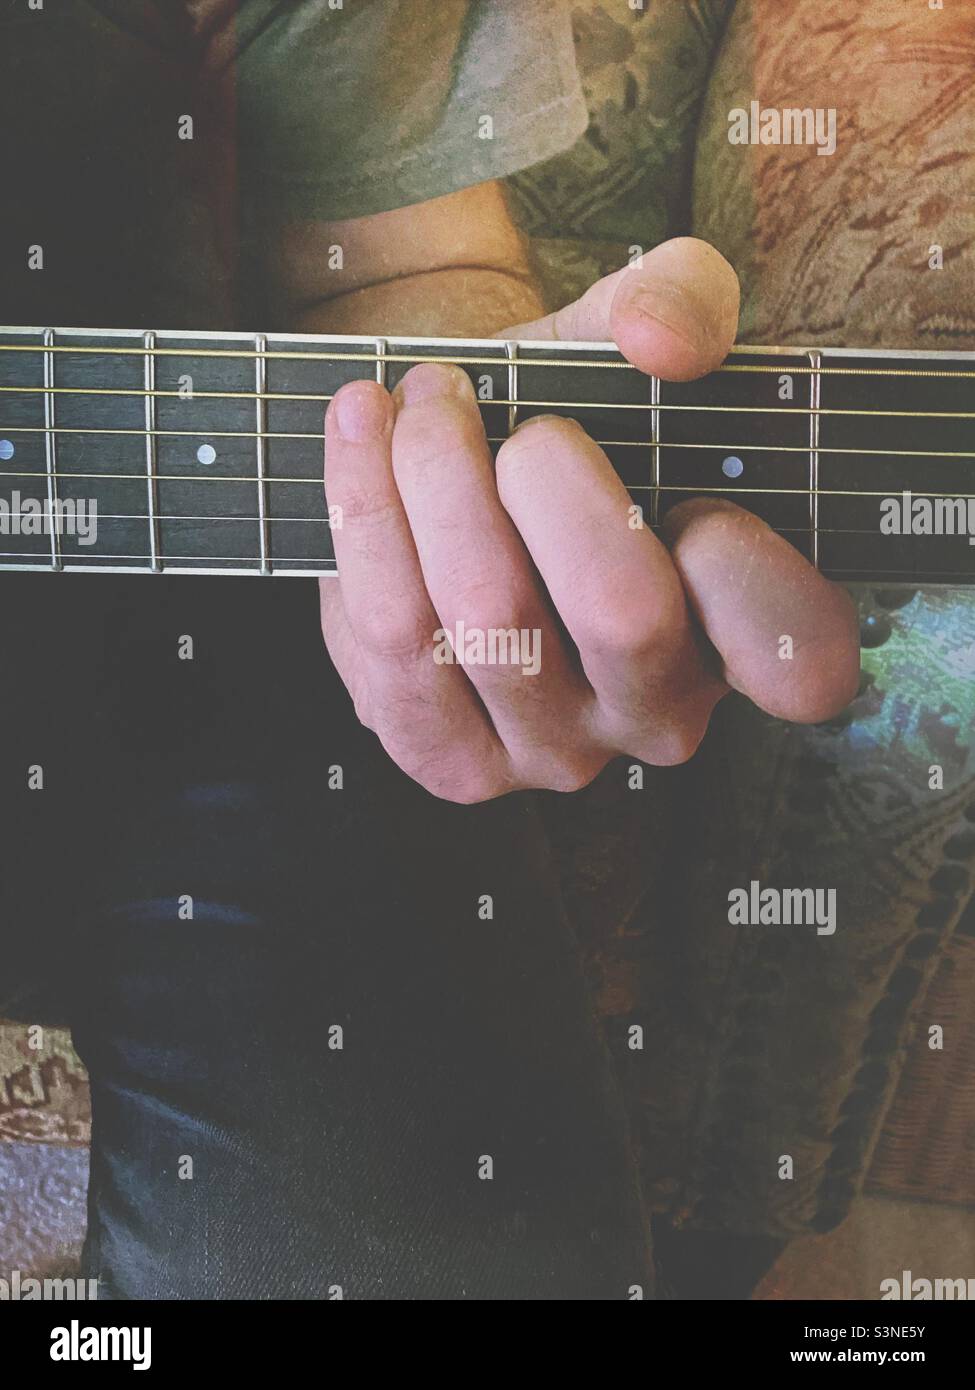 Eine Männerhand, die einen Akkord auf dem Griffbrett einer Gitarre Spielte, Wurde Mit Einem Mextures-Filter verwendet. Stockfoto